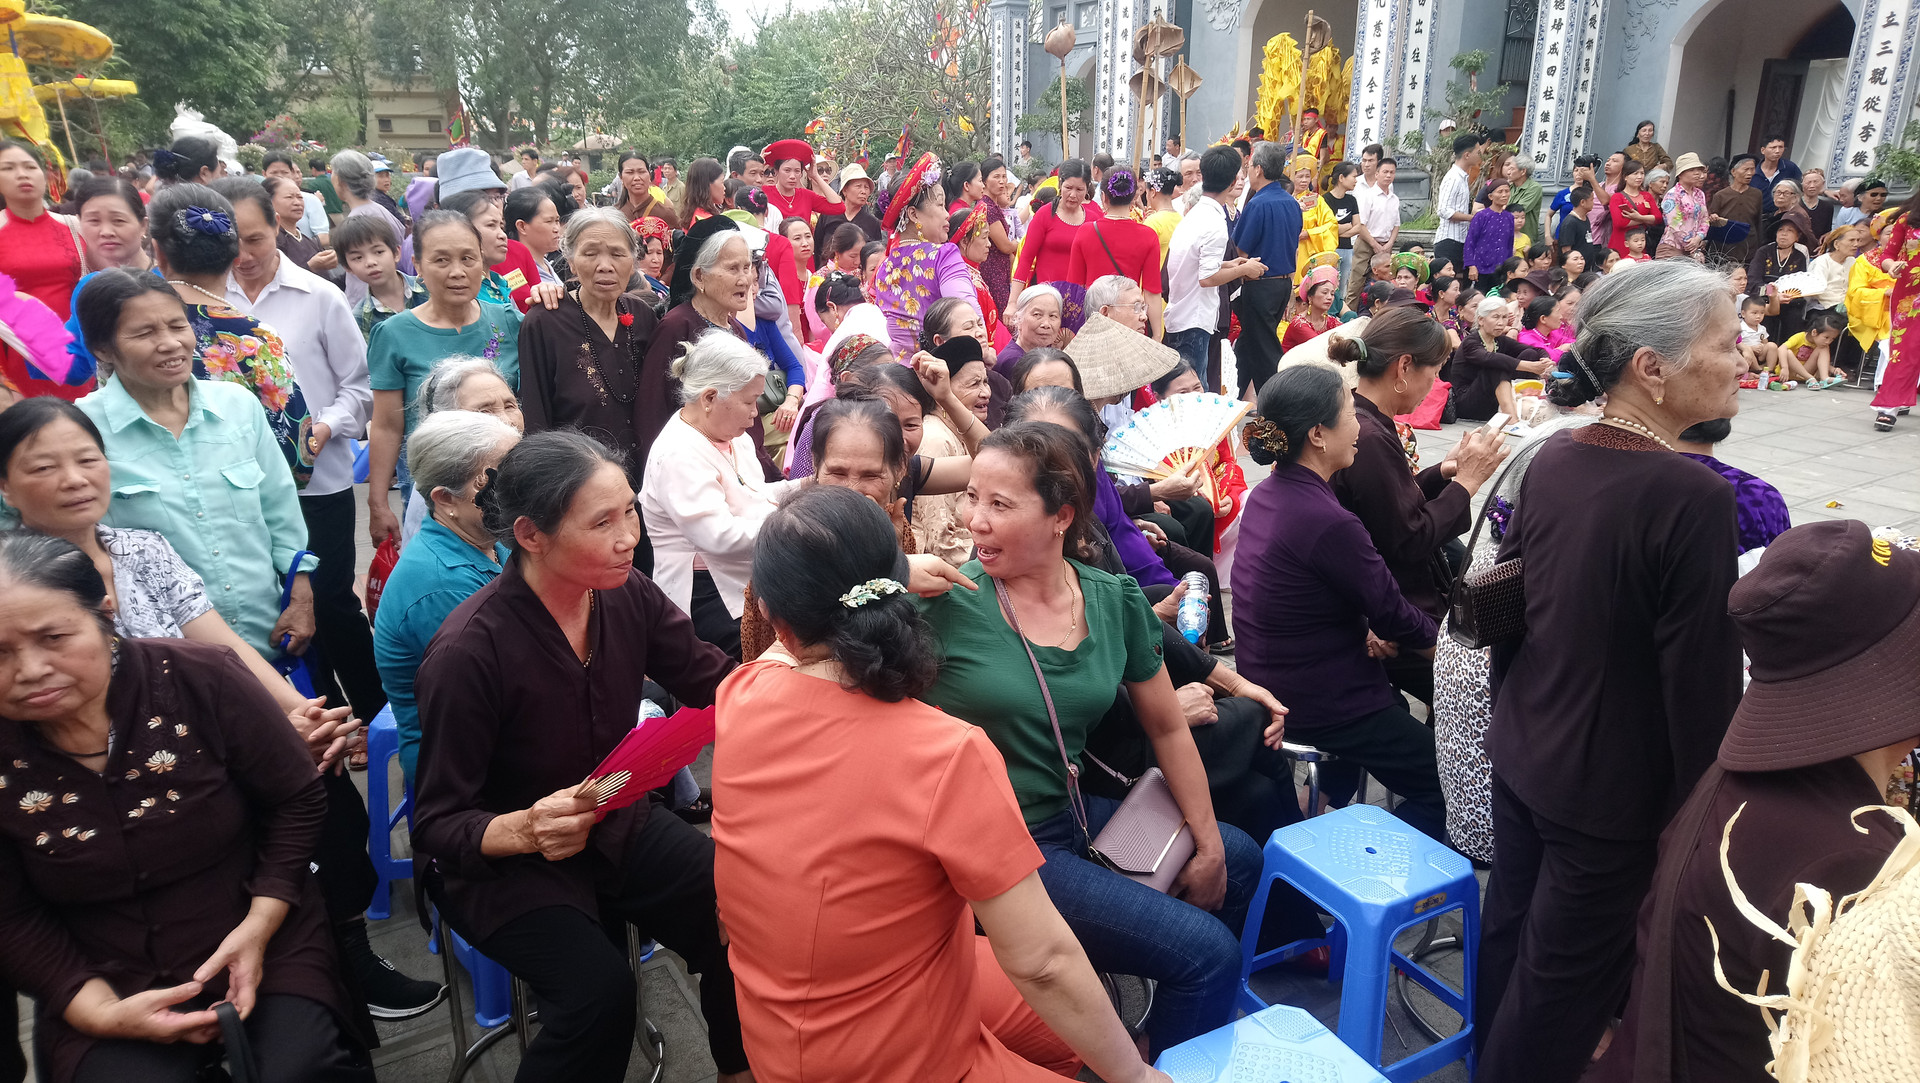 Văn lâm (Hưng Yên): Độc đáo lễ hội cầu mưa